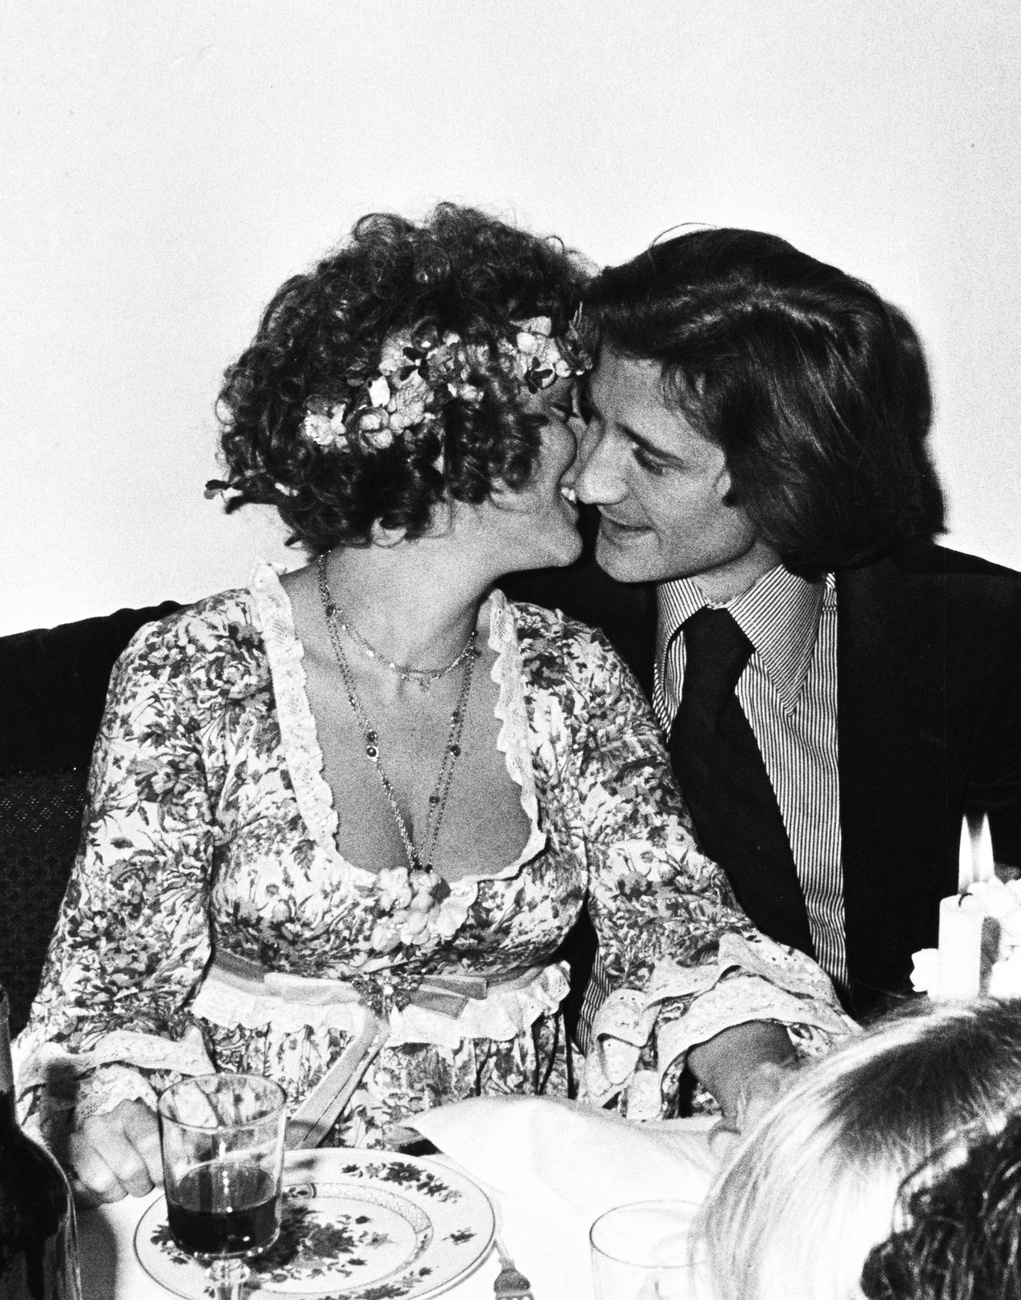 1981, Roman Polanskival a César-díjkiosztón. Egy évvel később hunyt el otthonában, Párizsban: nem tudta feldolgozni fia halálát, ezért rengeteg nyugtatót vett be, és alkoholt ivott rá